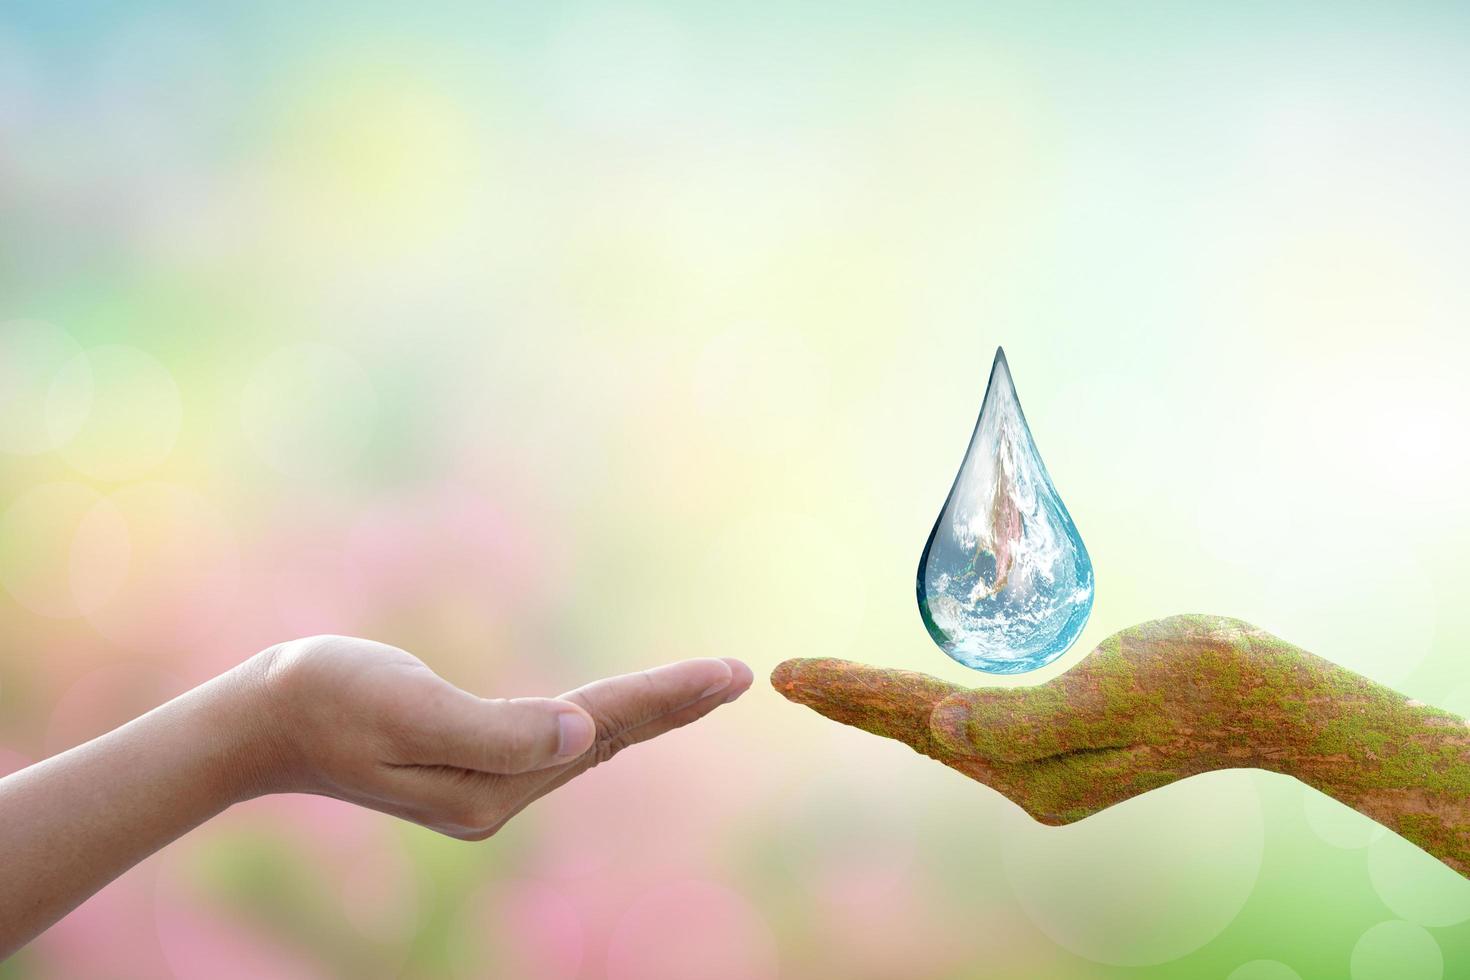 begrepp av sparande de värld vatten droppar på mänsklig händer foto